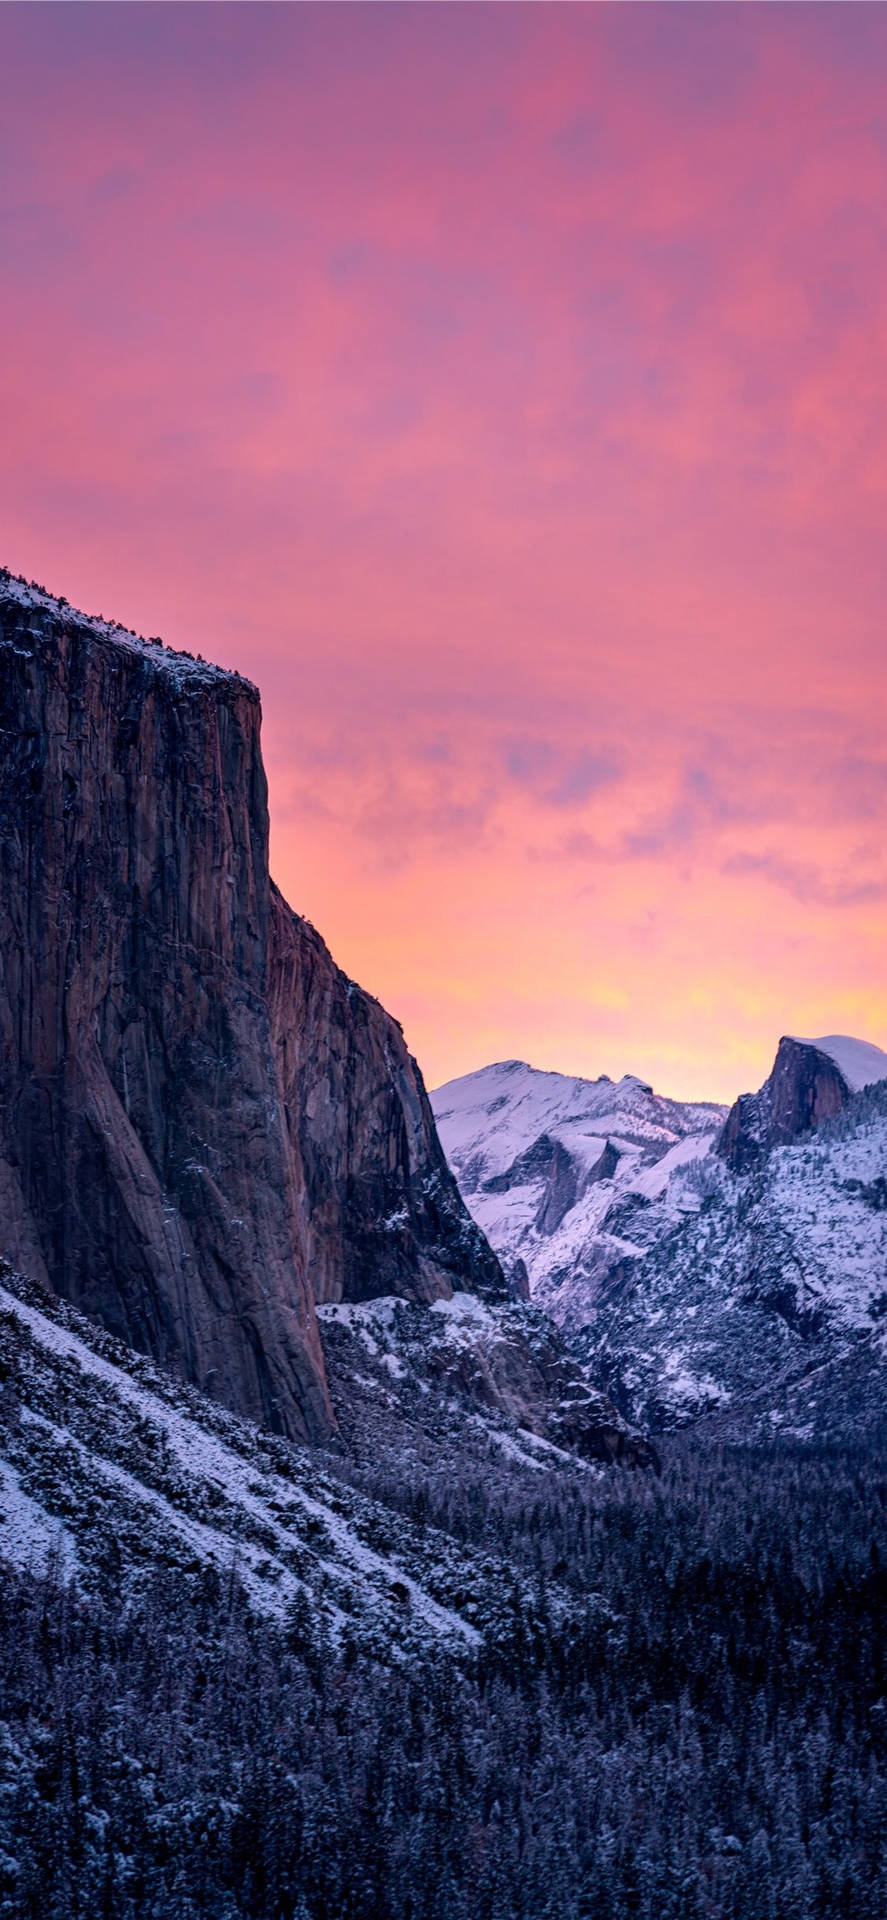 Nyd smukke udsigter fra Yosemite National Park på din Iphone. Wallpaper